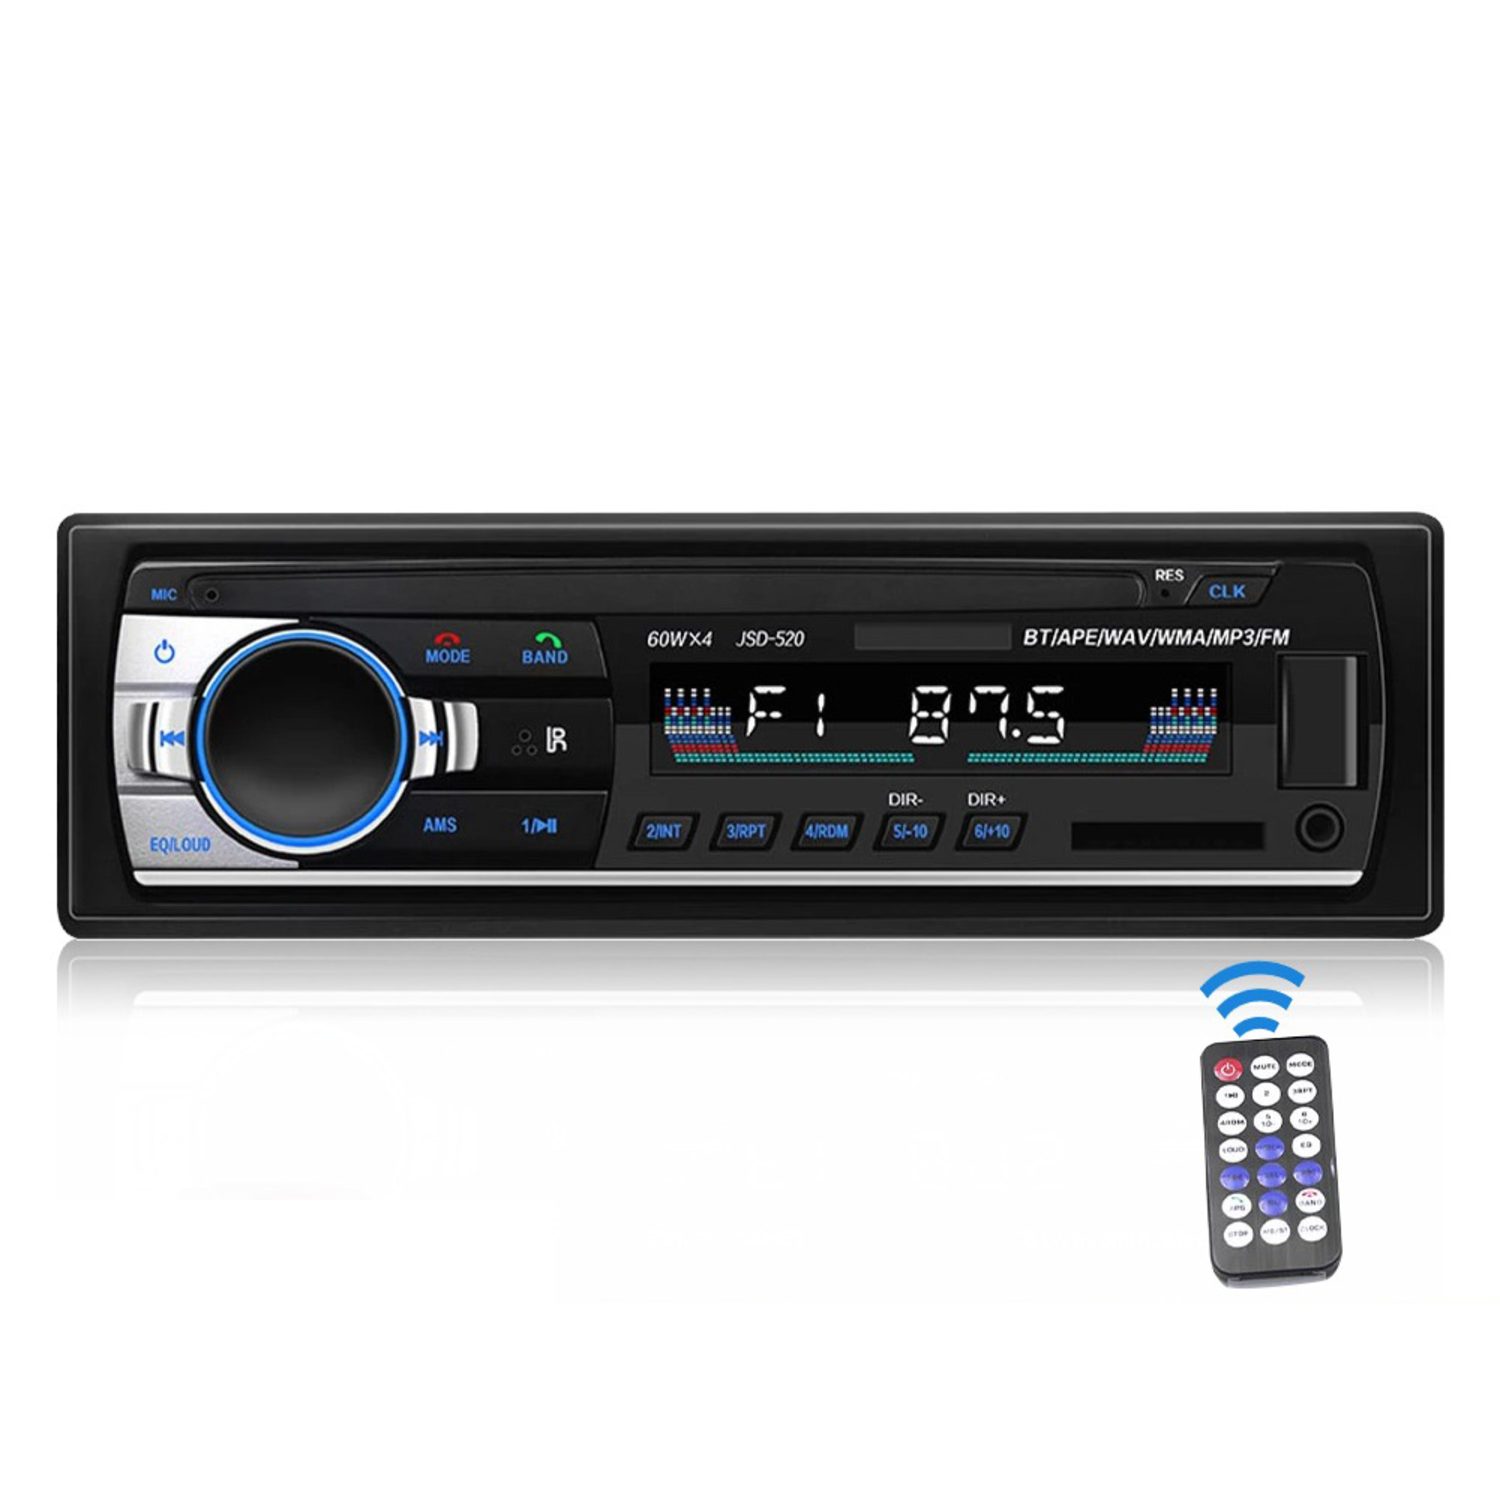 Zich voorstellen puppy Omgekeerd VCTparts Auto Radio Inbouw Speler Digitale Bluetooth met Aux en RGB LED -  VCTparts